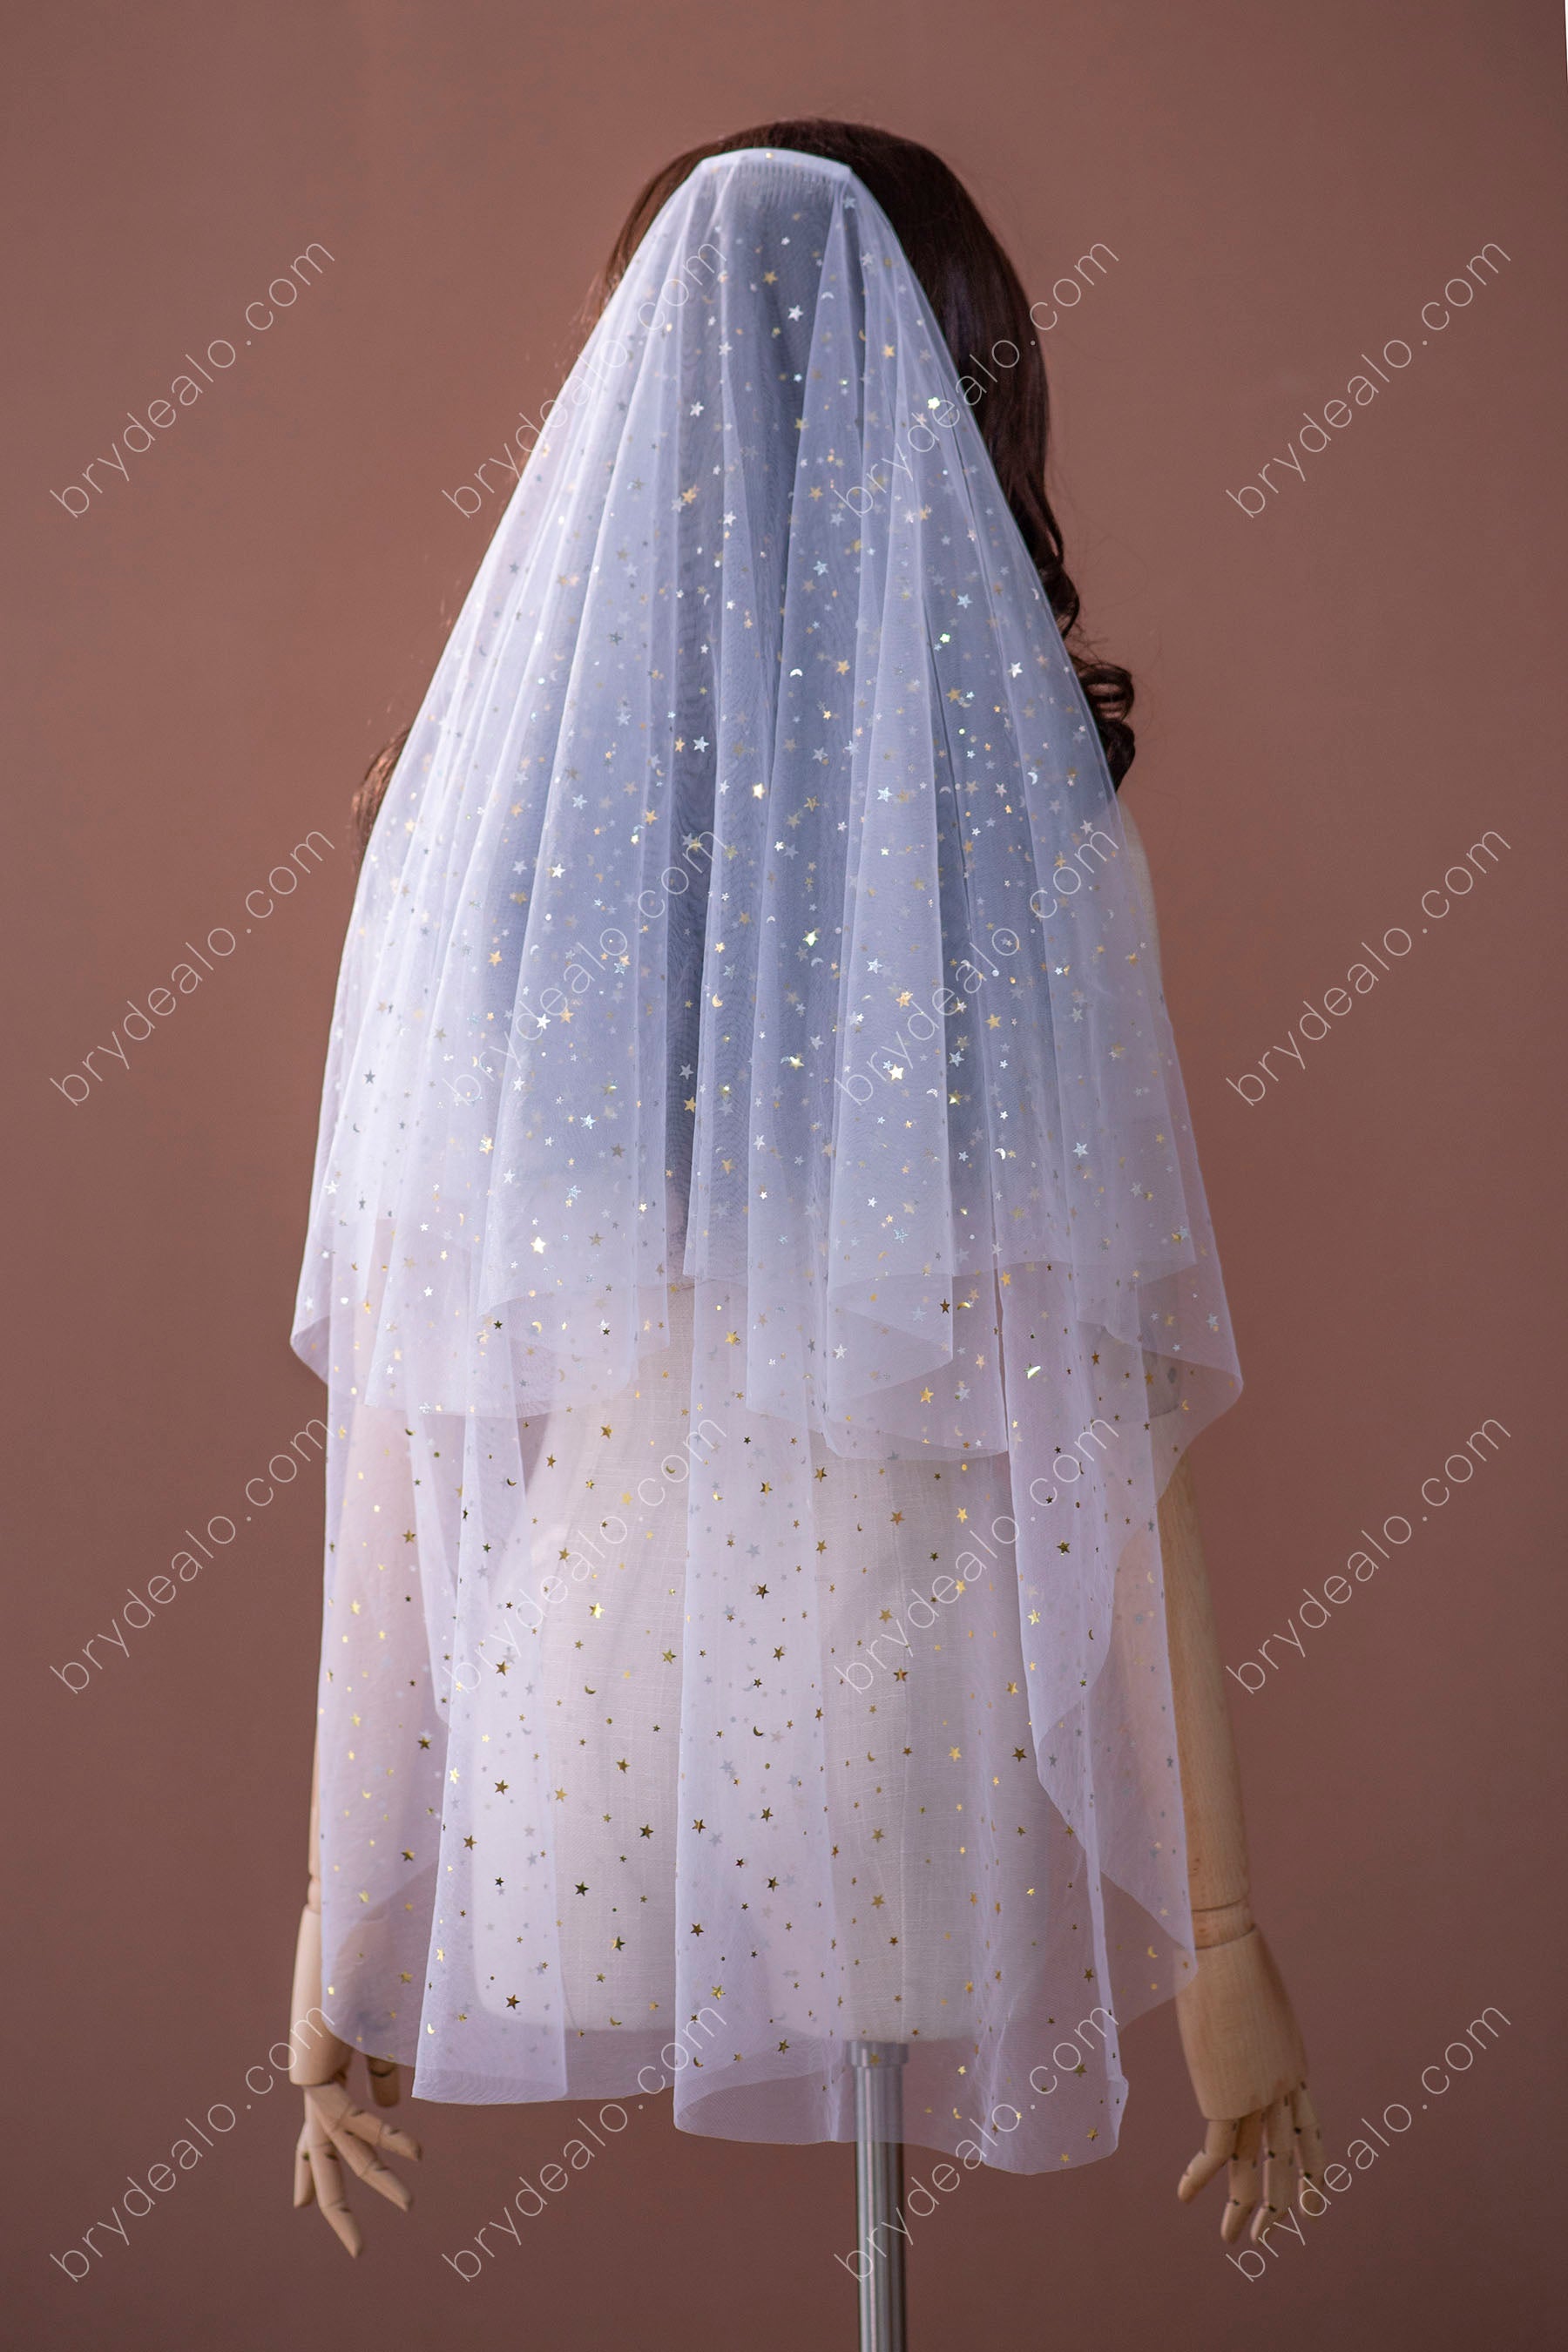 http://brydealofactory.com/cdn/shop/products/romantic-star-moon-sequin-comb-bridal-veil.jpg?v=1644138857&width=2048